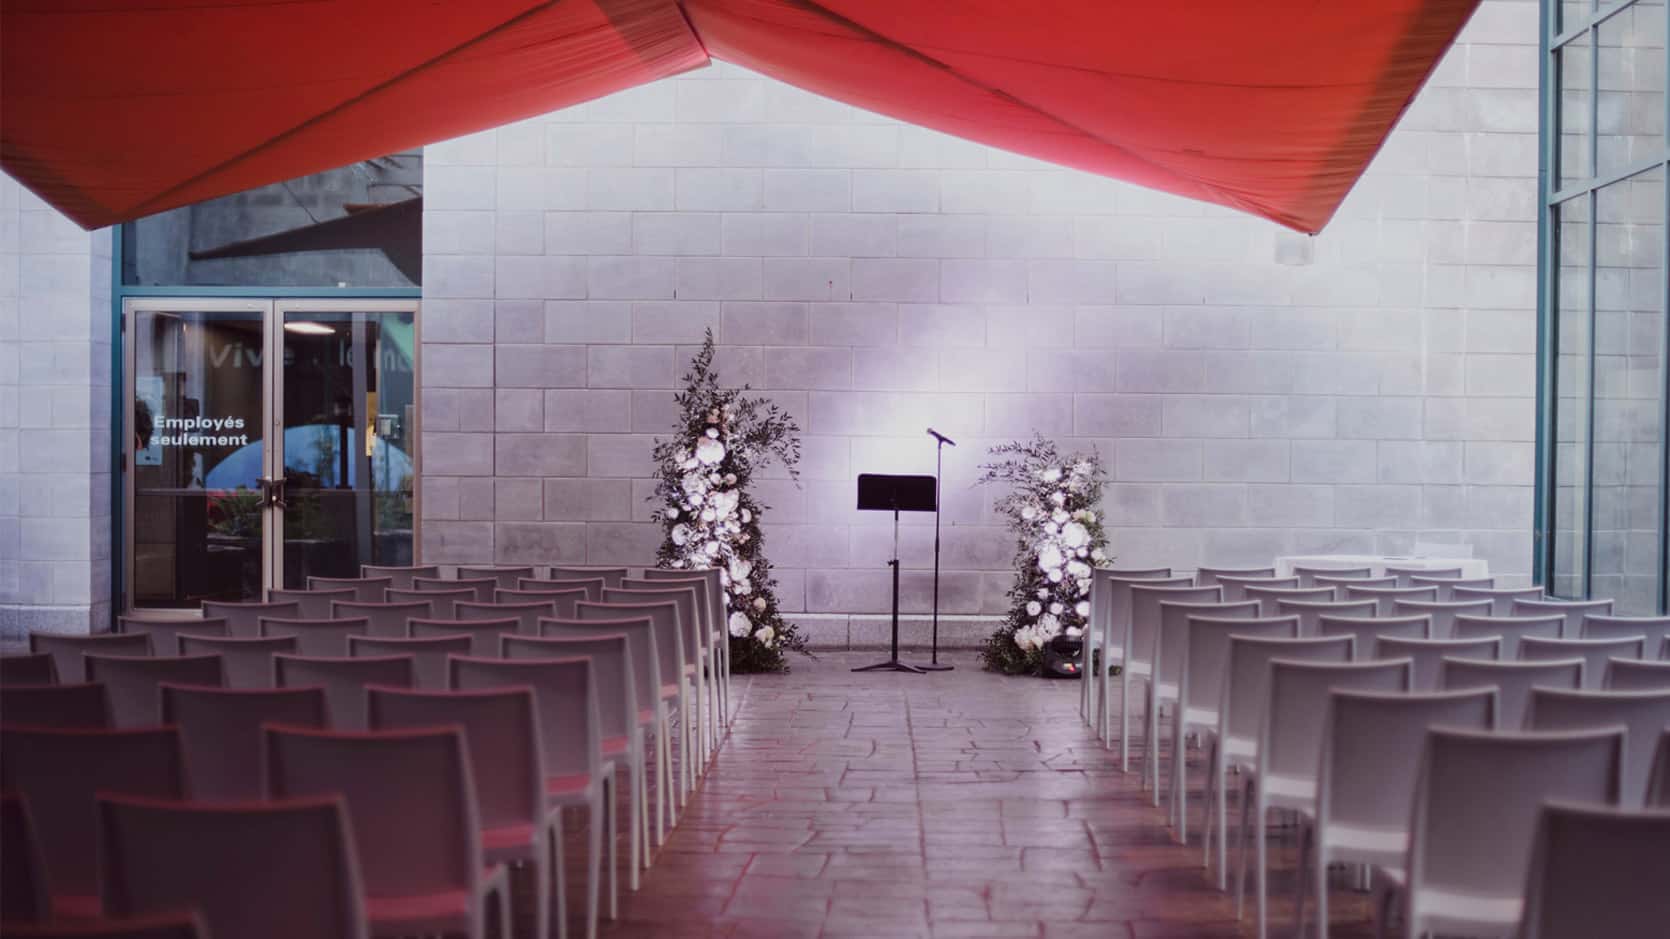 Dans la cour intérieur du Musée, des chaises sont placées le long d'une allée menant à deux arrangement floraux illuminés.